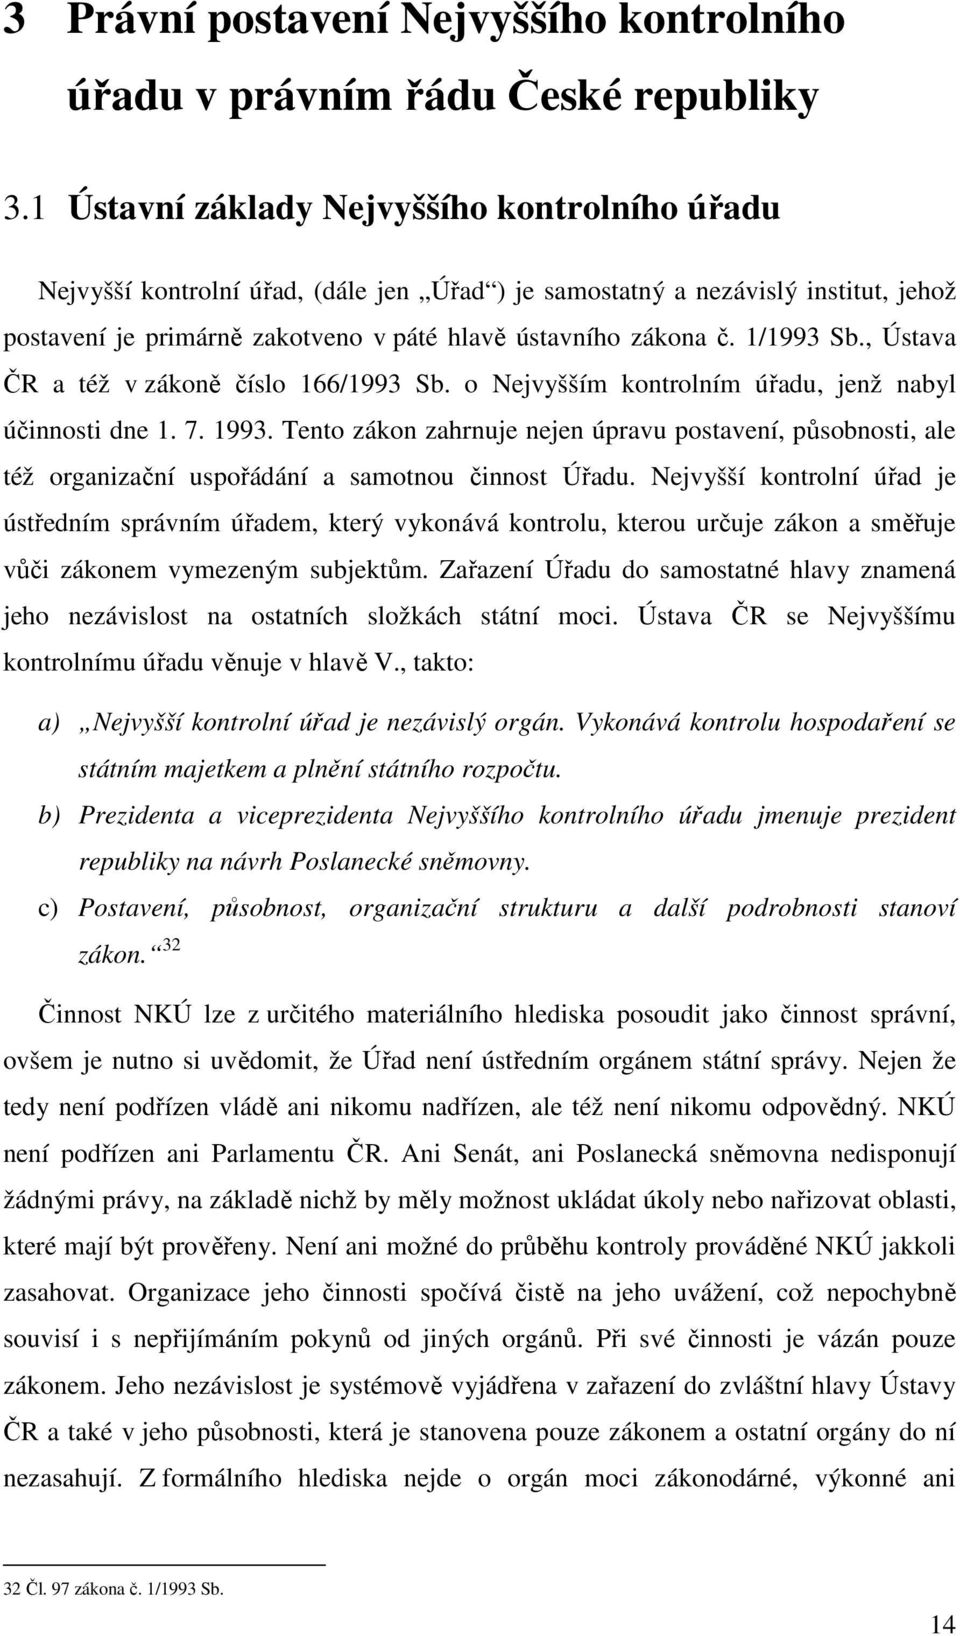 1/1993 Sb., Ústava ČR a též v zákoně číslo 166/1993 Sb. o Nejvyšším kontrolním úřadu, jenž nabyl účinnosti dne 1. 7. 1993.